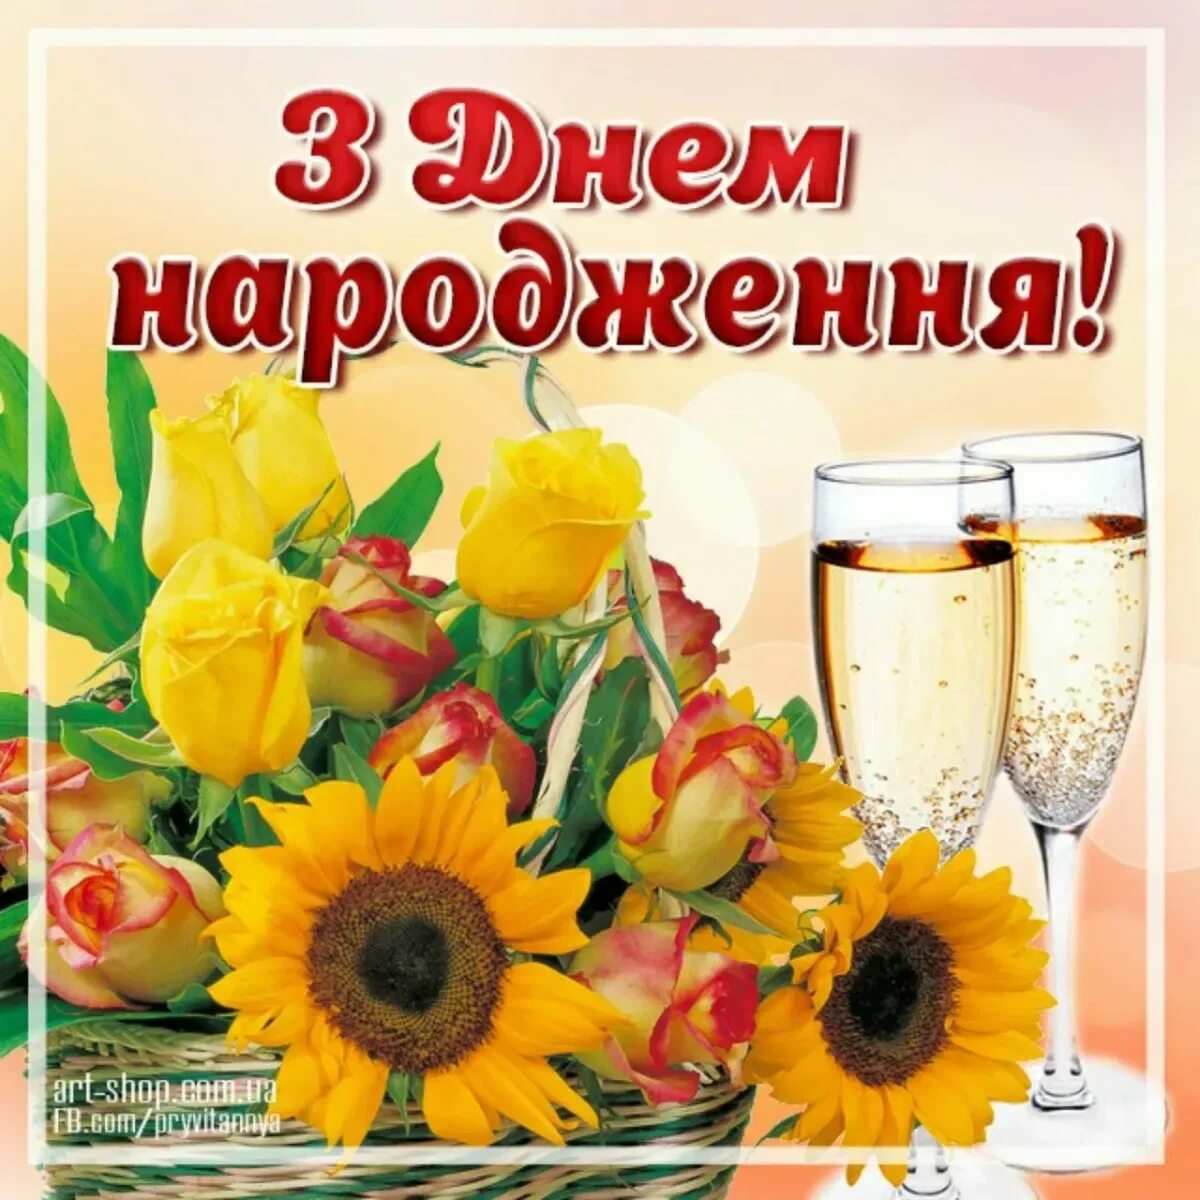 Привітання з днем народження. Вітаю з днем народження. Вітання на день народження мужчині на українській мові. С днем народження мужчине на украинском.